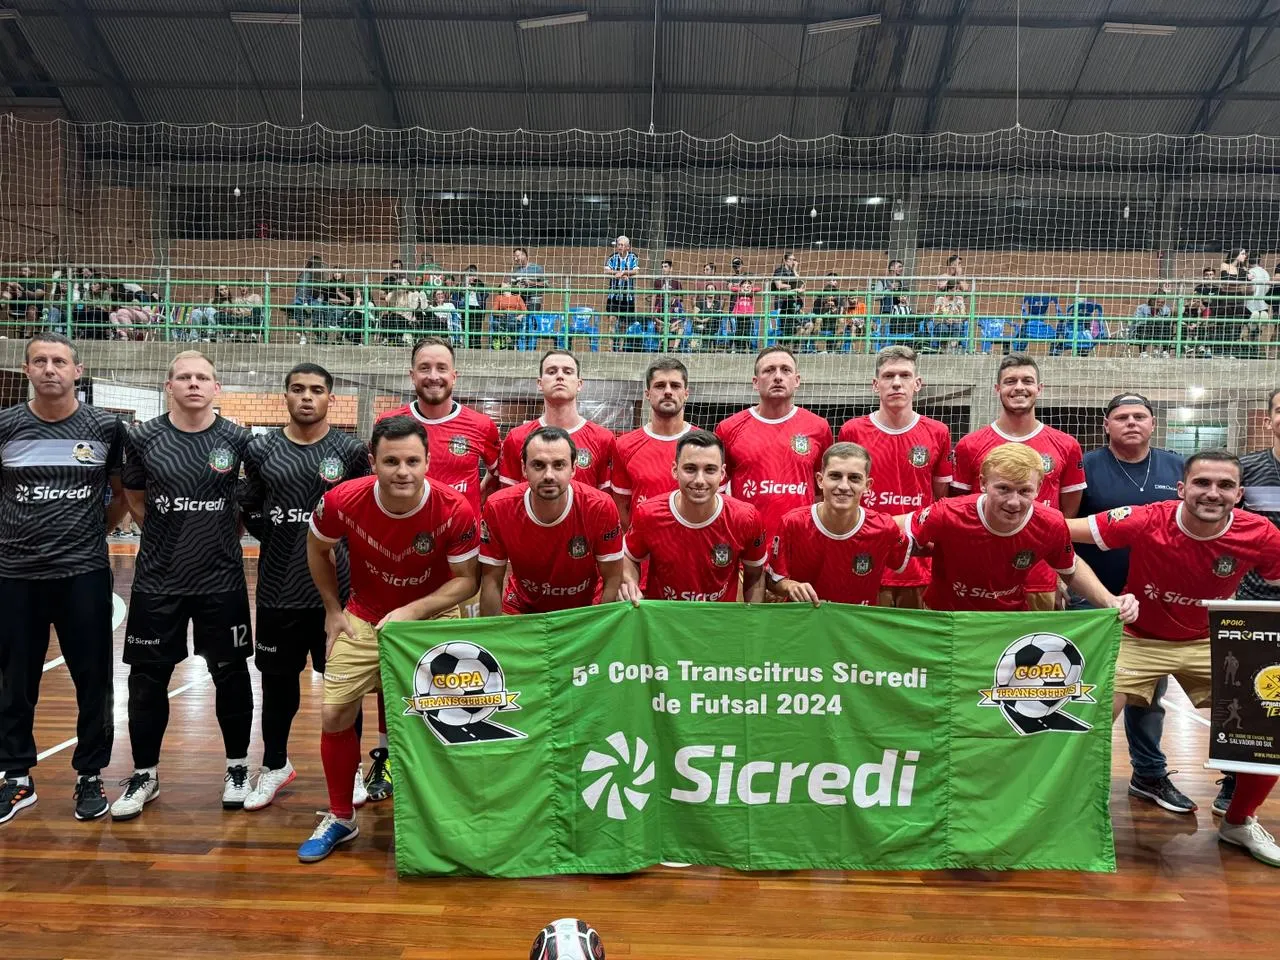 Salvador vence nas duas categorias na terceira rodada da Copa Transcitrus Sicredi de Futsal